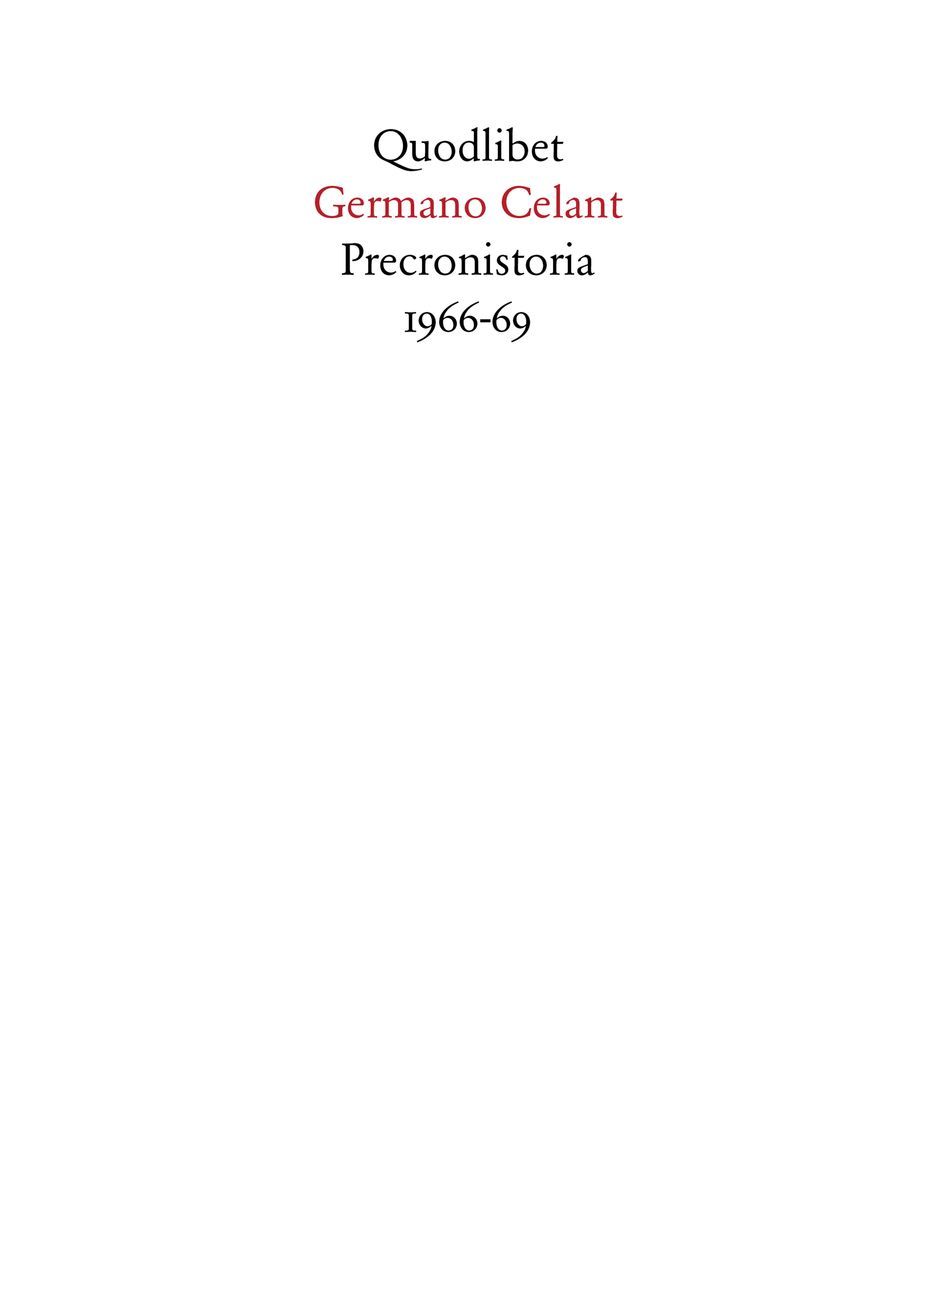 Germano Celant – Precronistoria 1966 69 (Quodlibet, Macerata 2017)